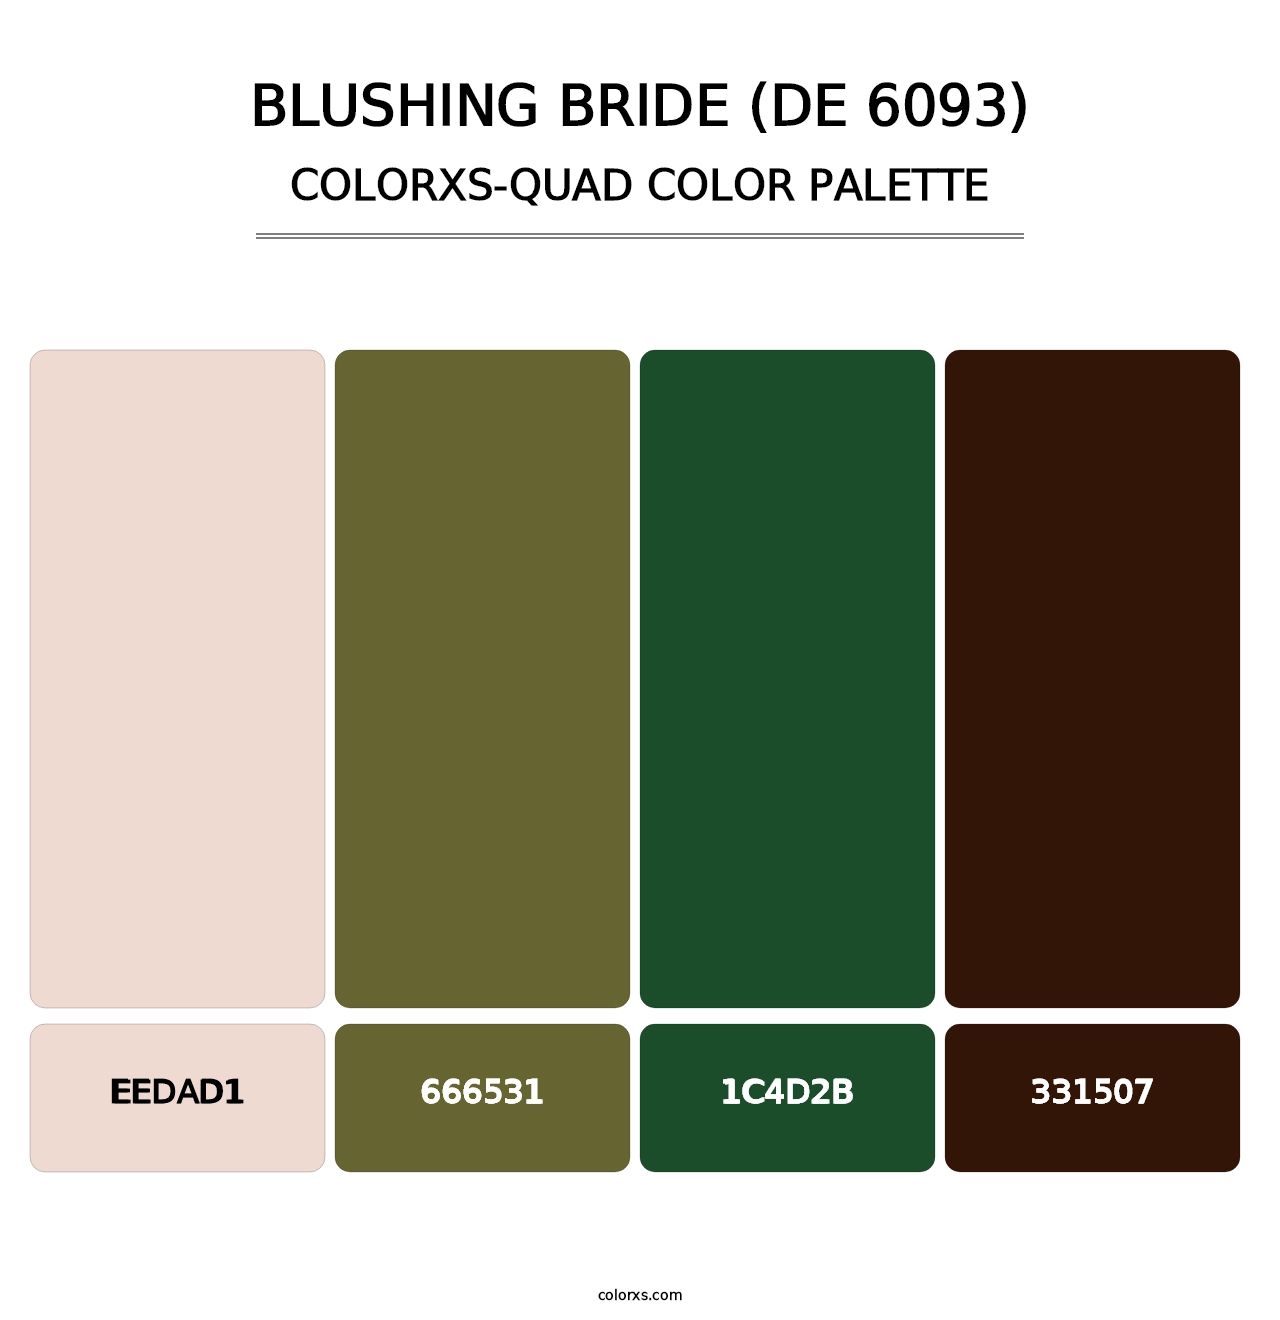 Blushing Bride (DE 6093) - Colorxs Quad Palette